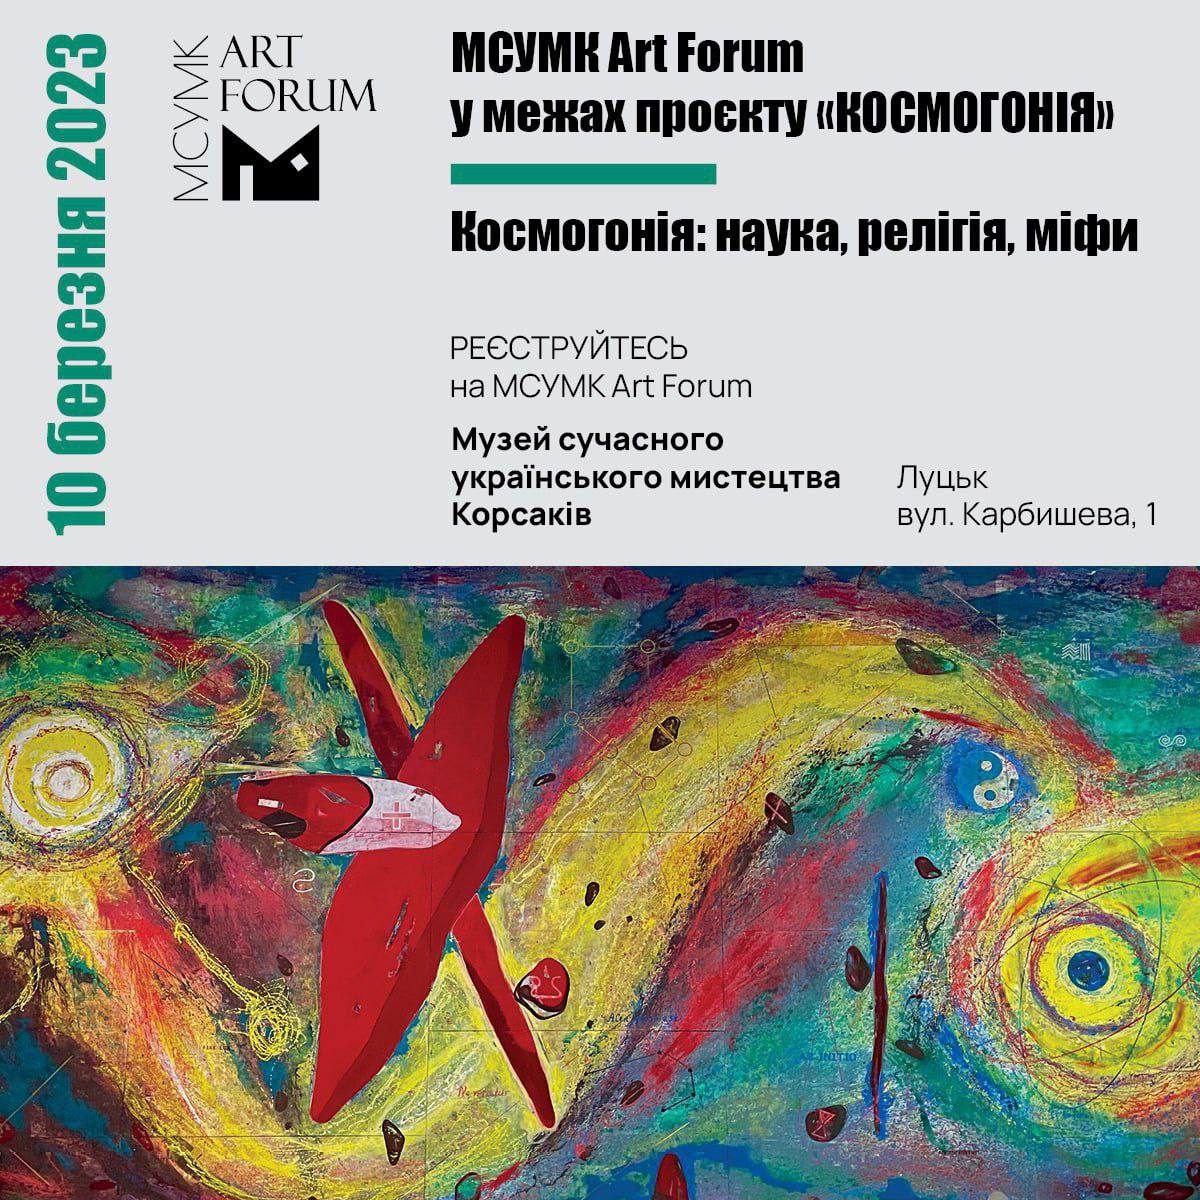 МСУМК Art Forum у рамках проєкту «Космогонія». Космогонія: наука, релігія, міфи